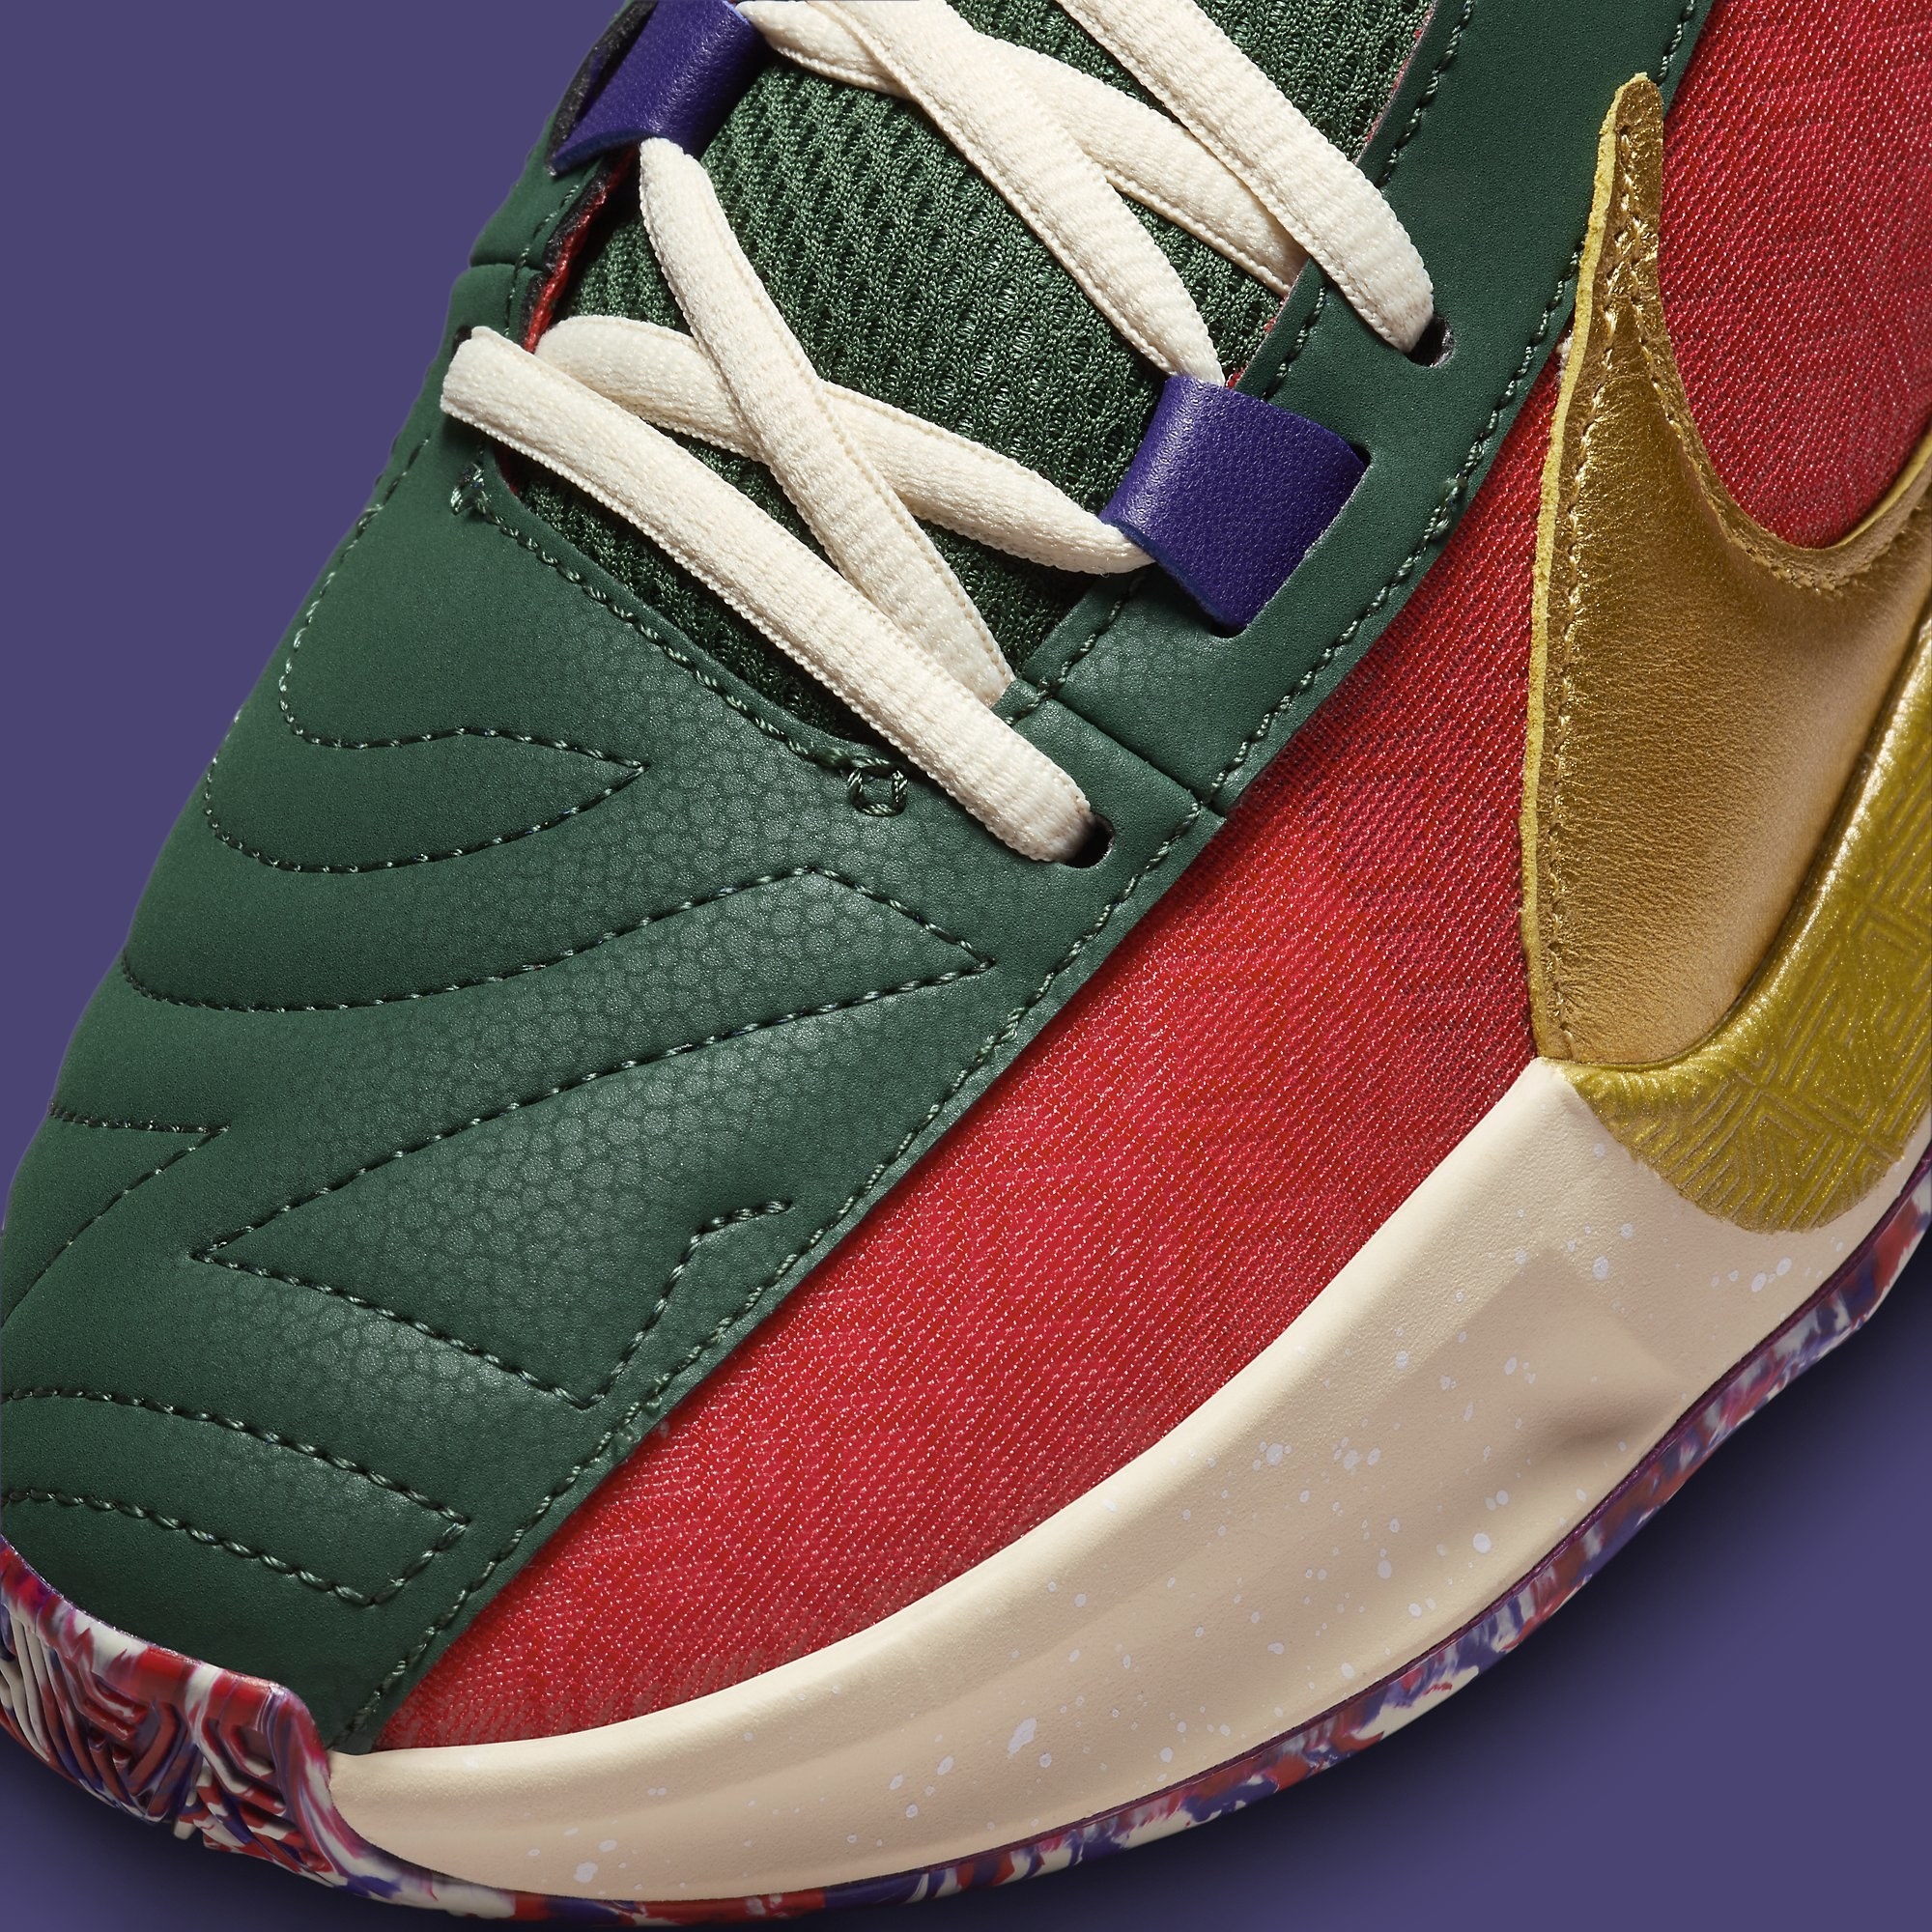 Nike Zoom Freak 5 Keep It a Buck Release Date DZ2944-600 Toe Detail